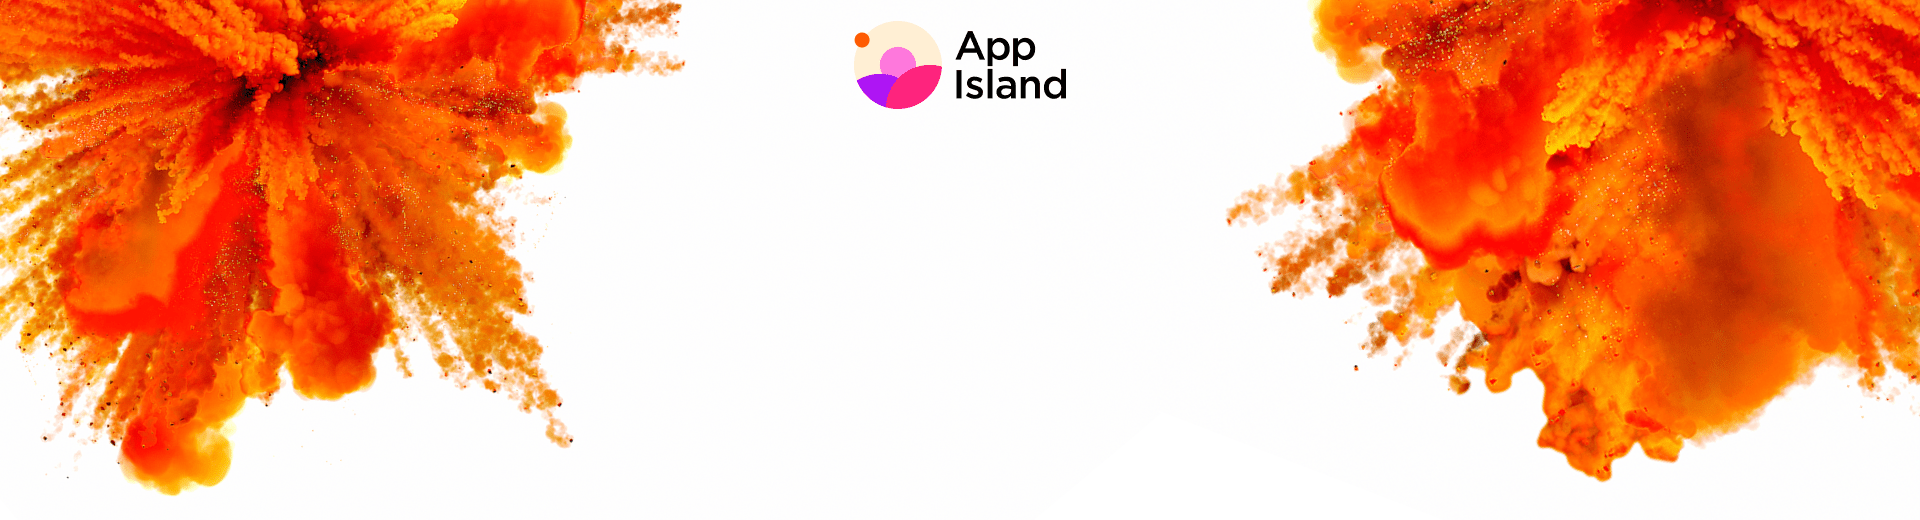 App Island ti aspetta!